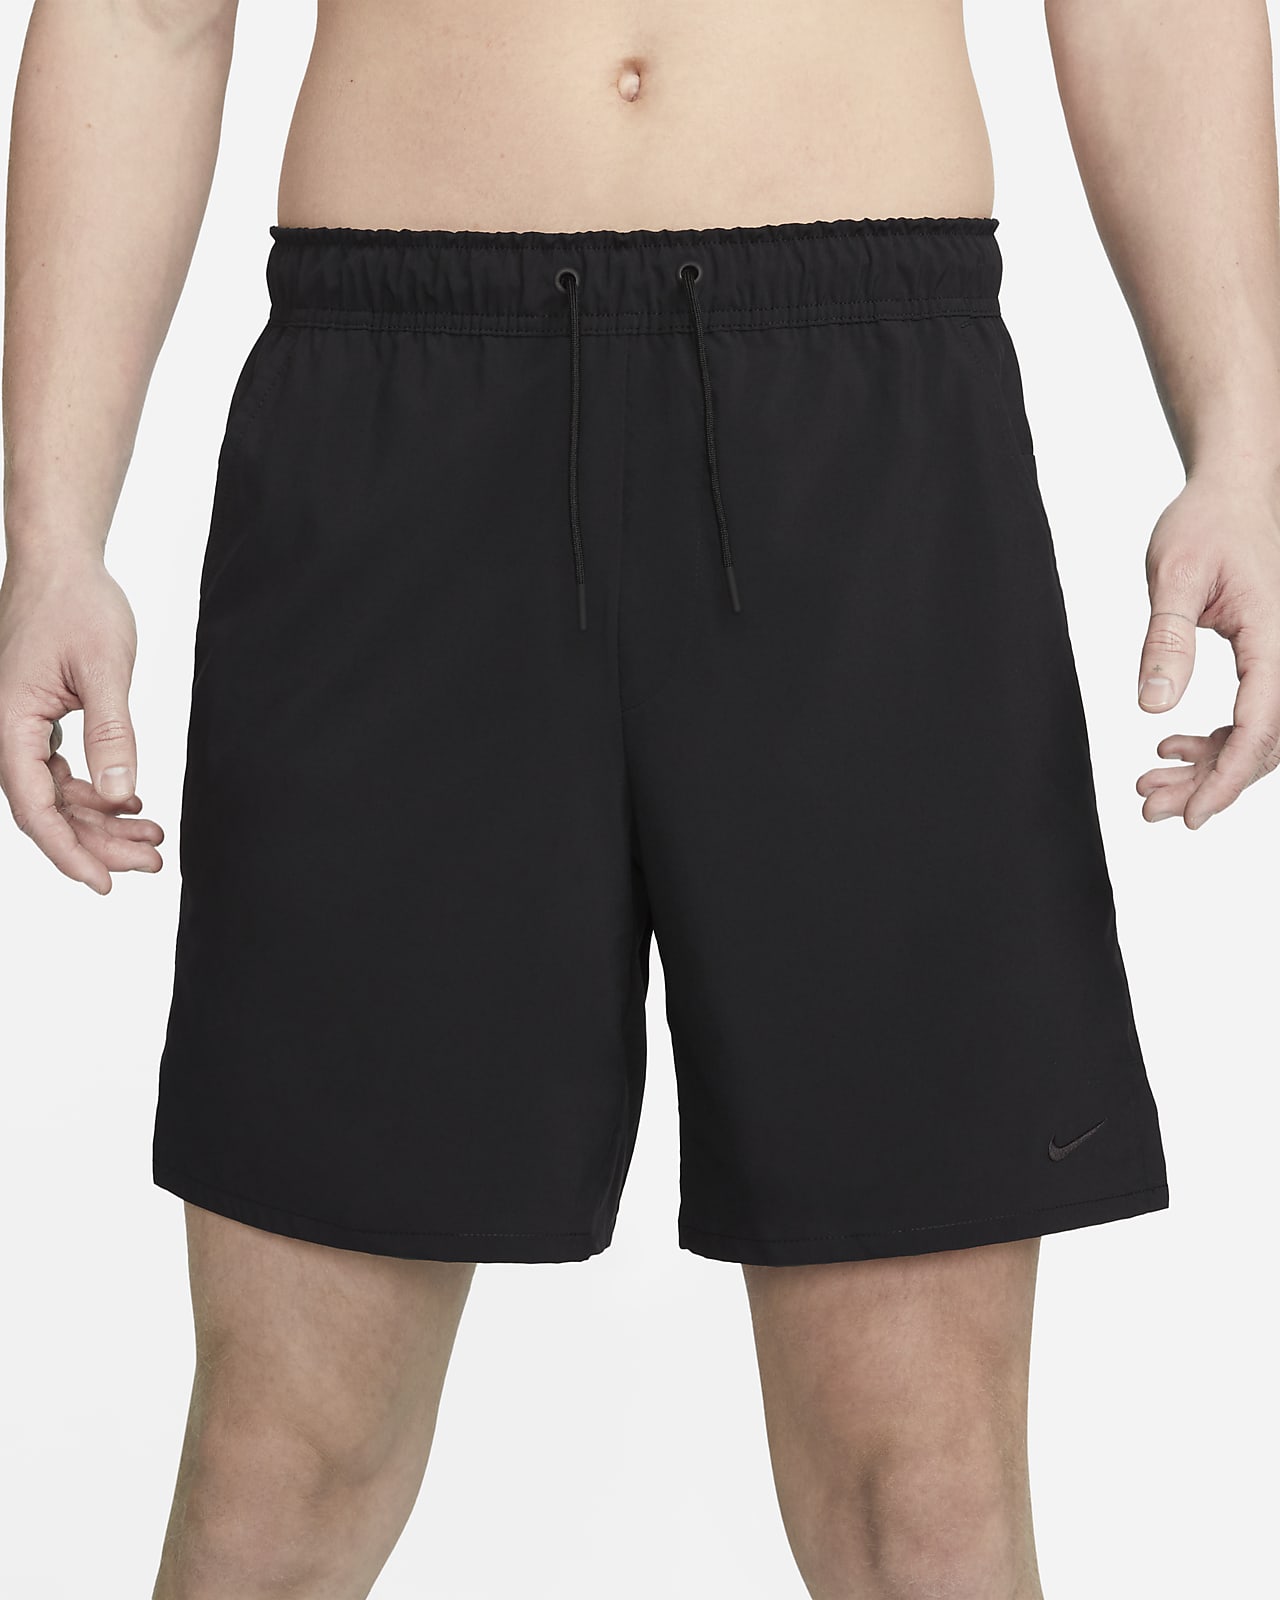 Nike Unlimited Men's Dri-FIT 7 Unlined Versatile Shorts.